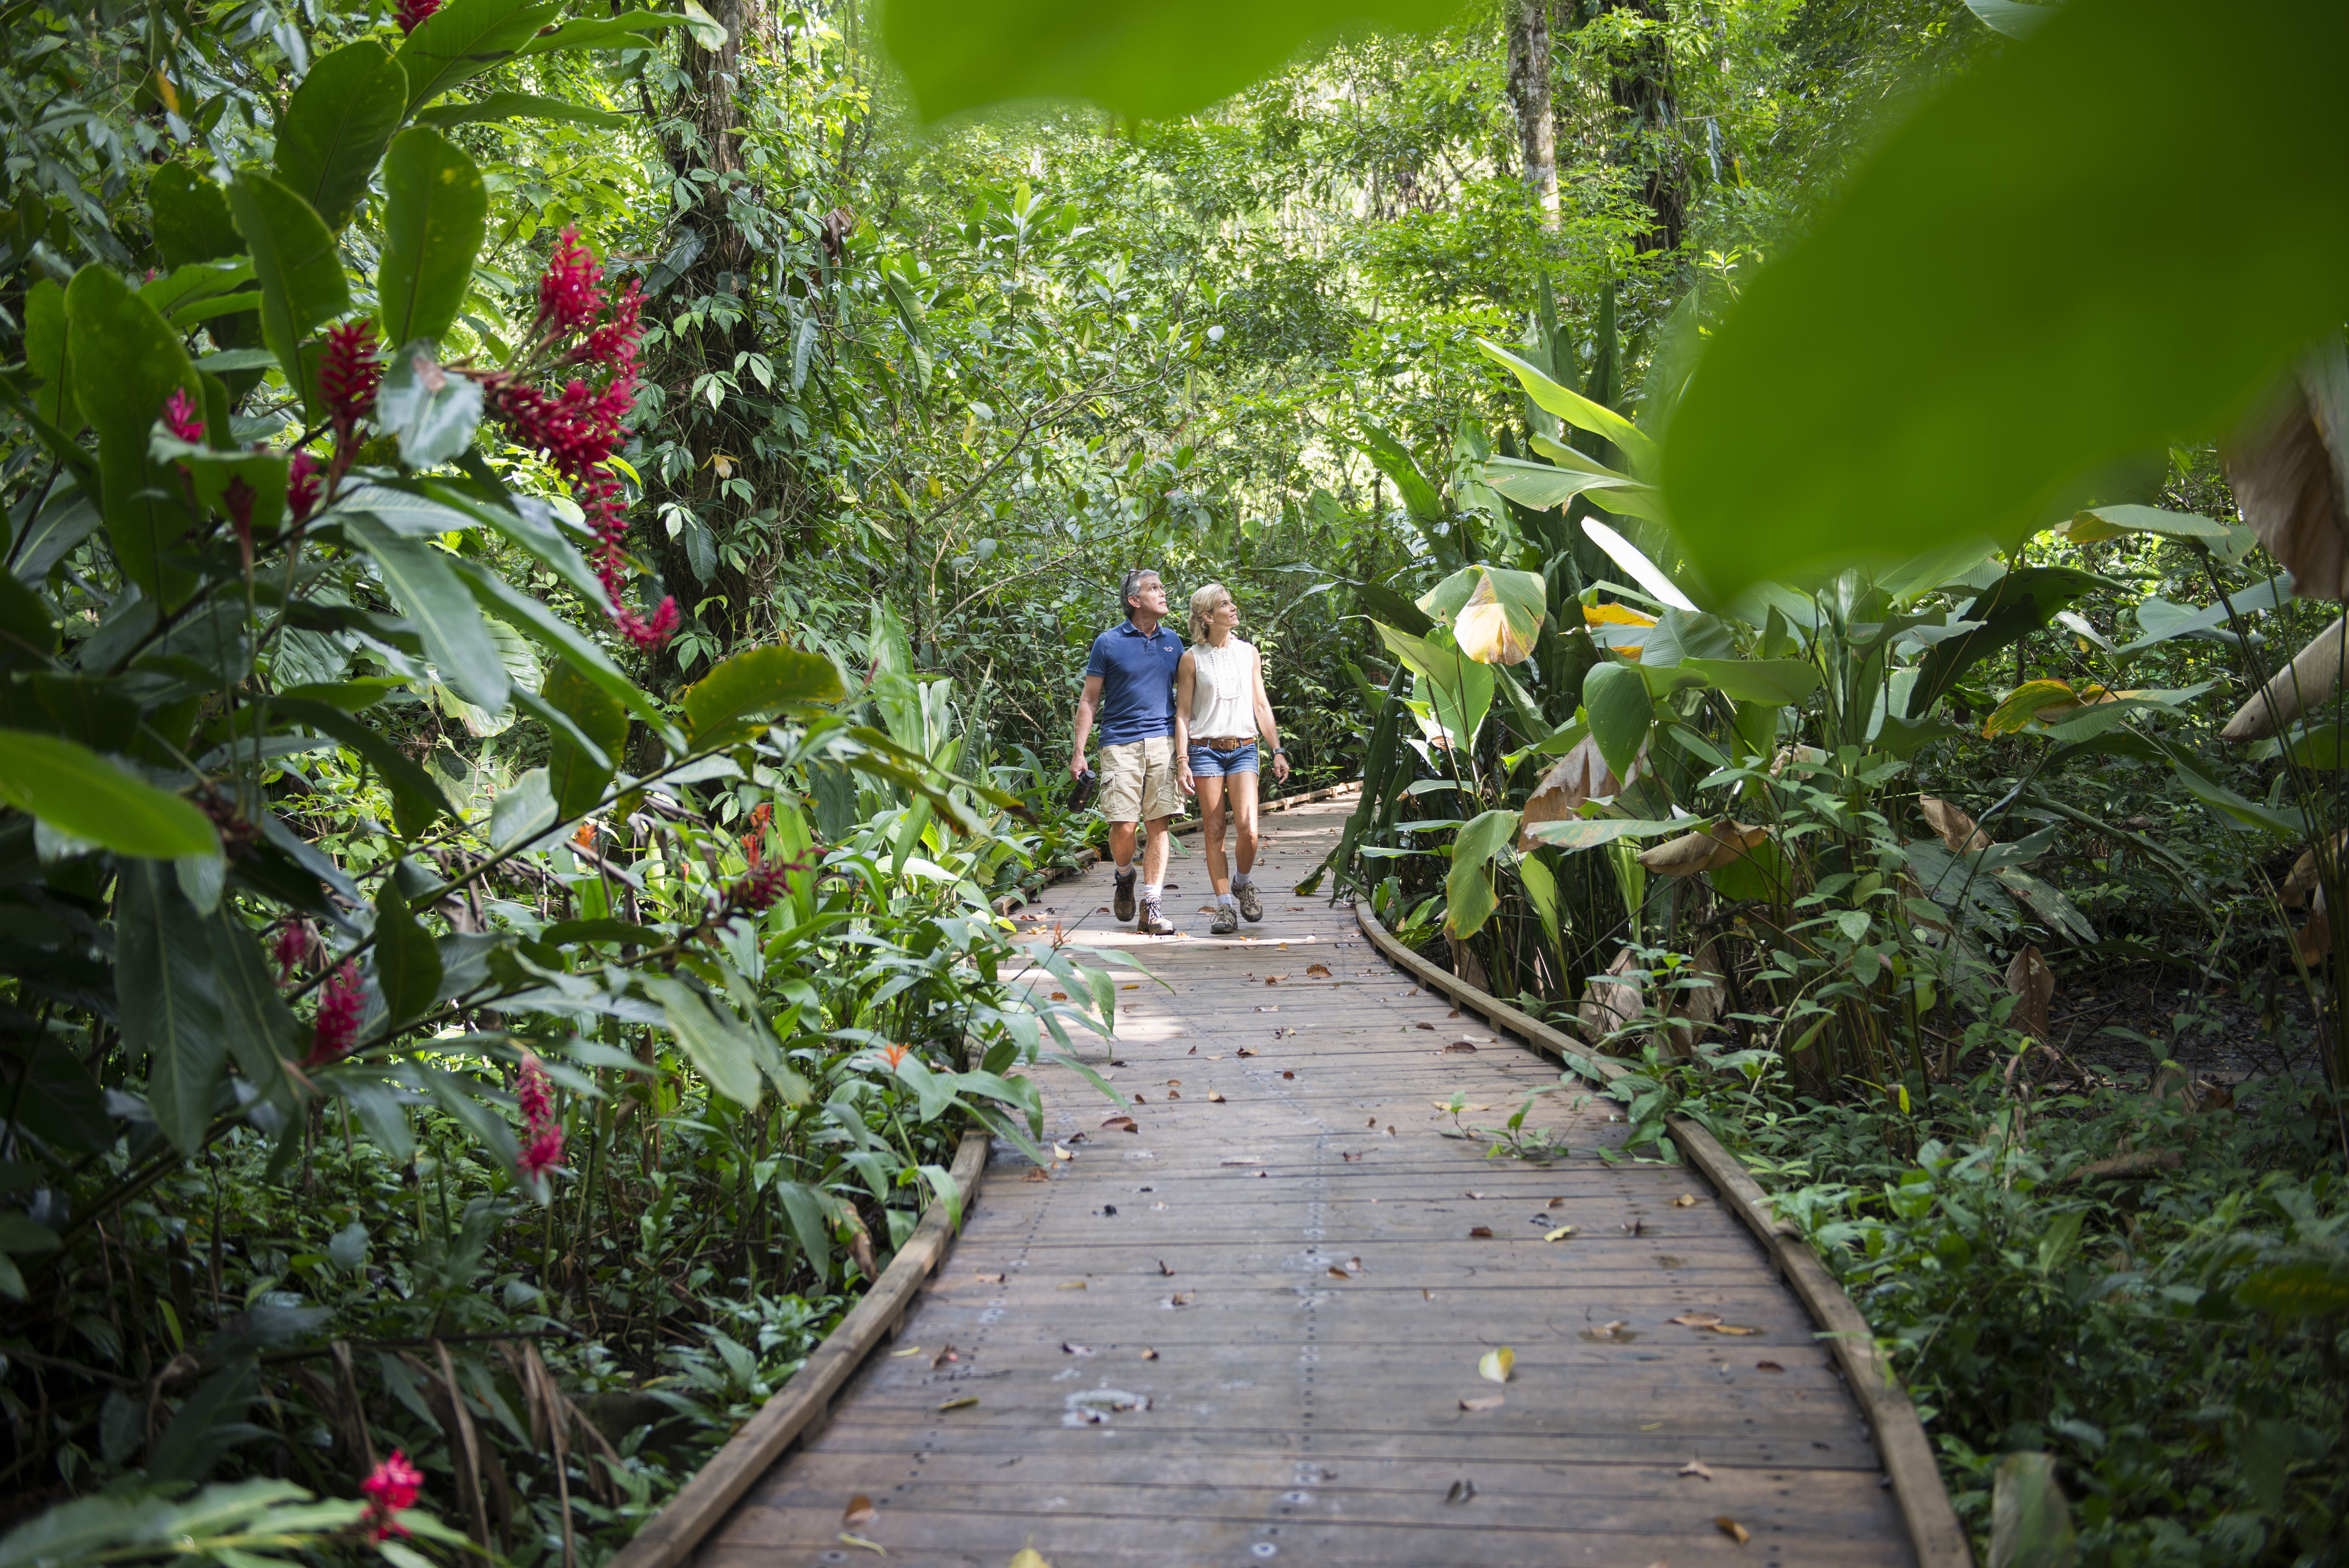 dulce pacifico nature trails amenities uvita real estate costa rica